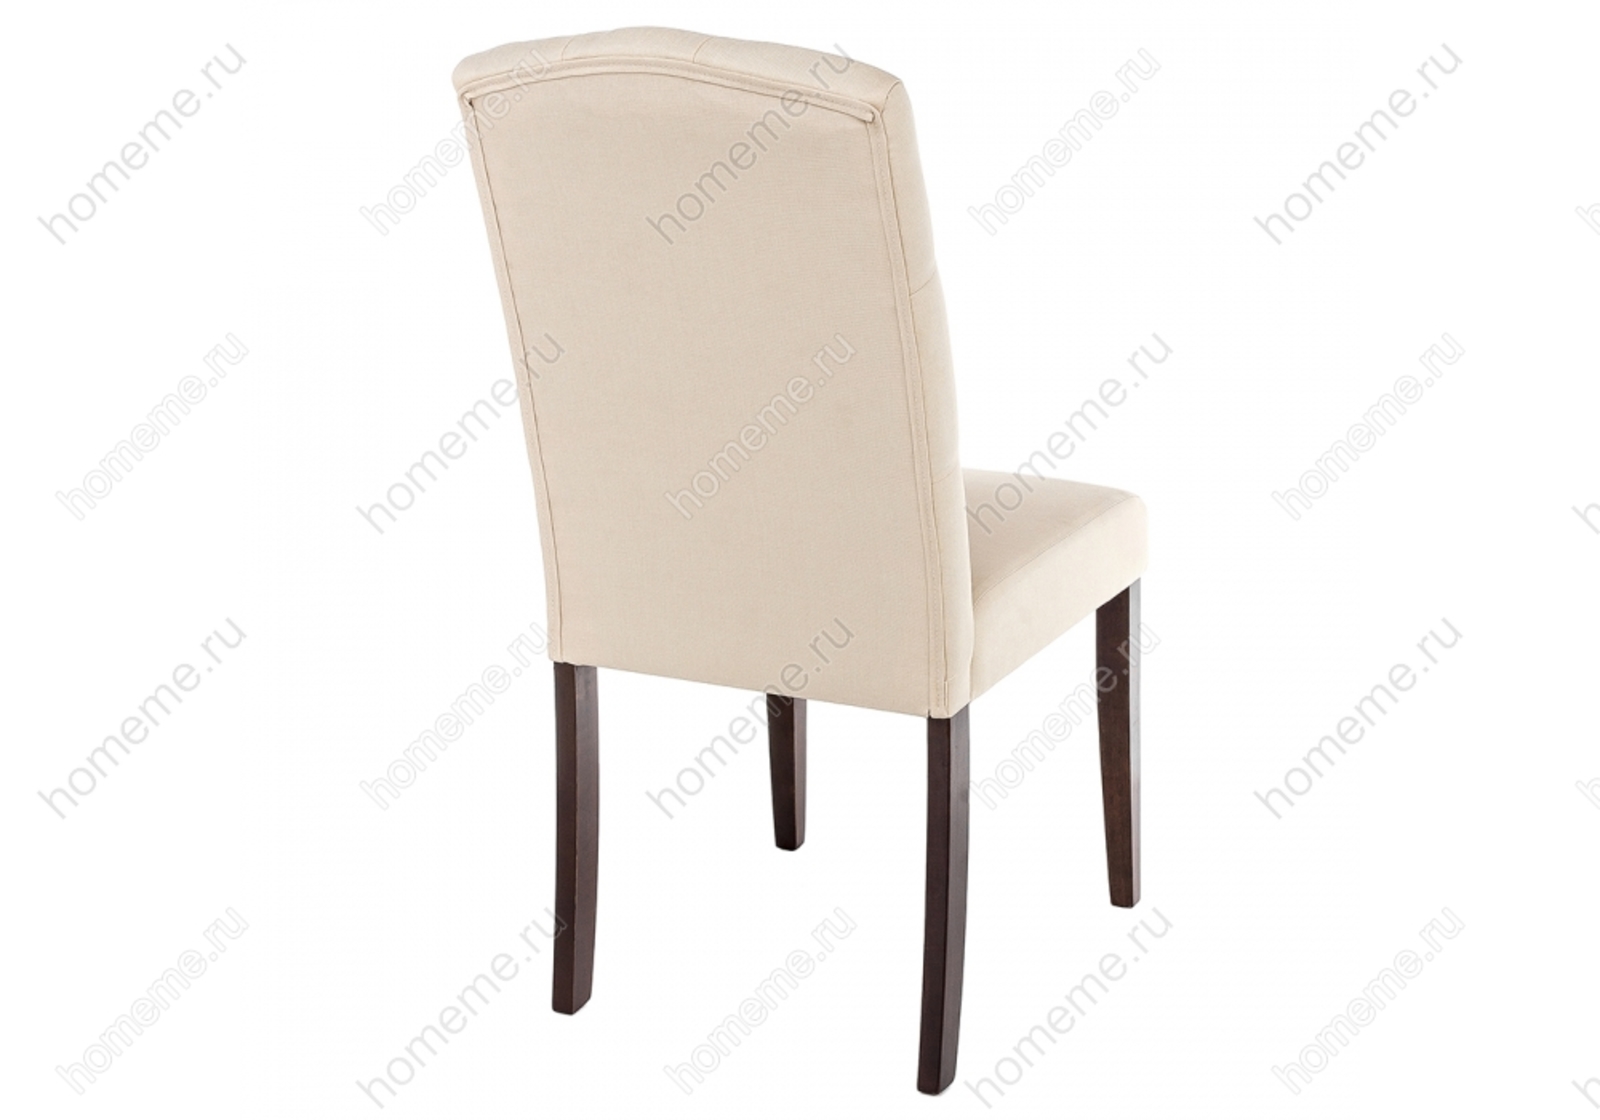 стул elegance dark walnut fabric cream бежевого цвета